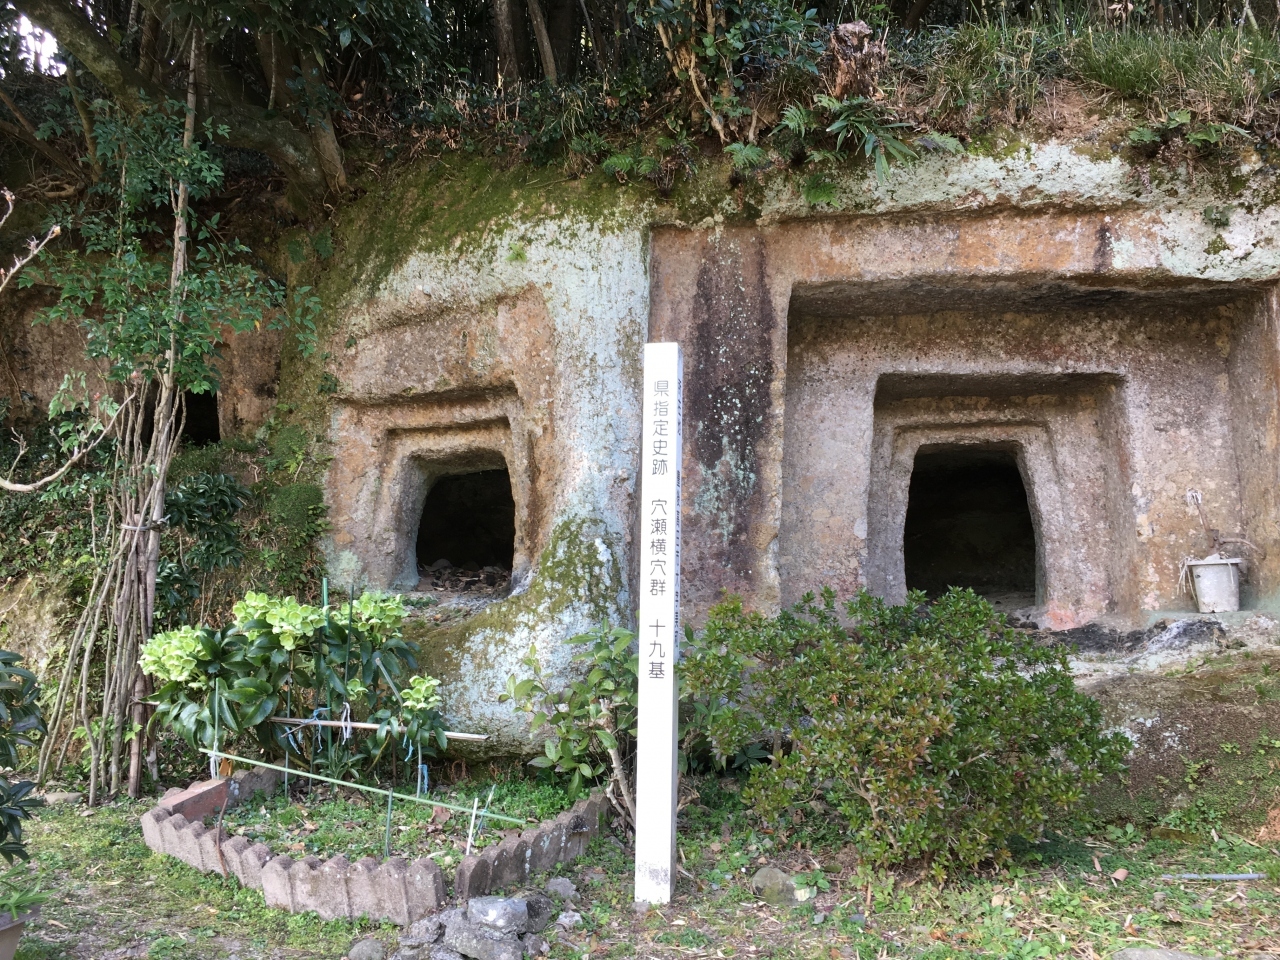 豊後高田の中心部から少し離れた、山城跡に行ってみます。

途中にあった穴瀬横穴群です。

19基があり、内部には装飾文様などが彫られた穴もあるようです。
